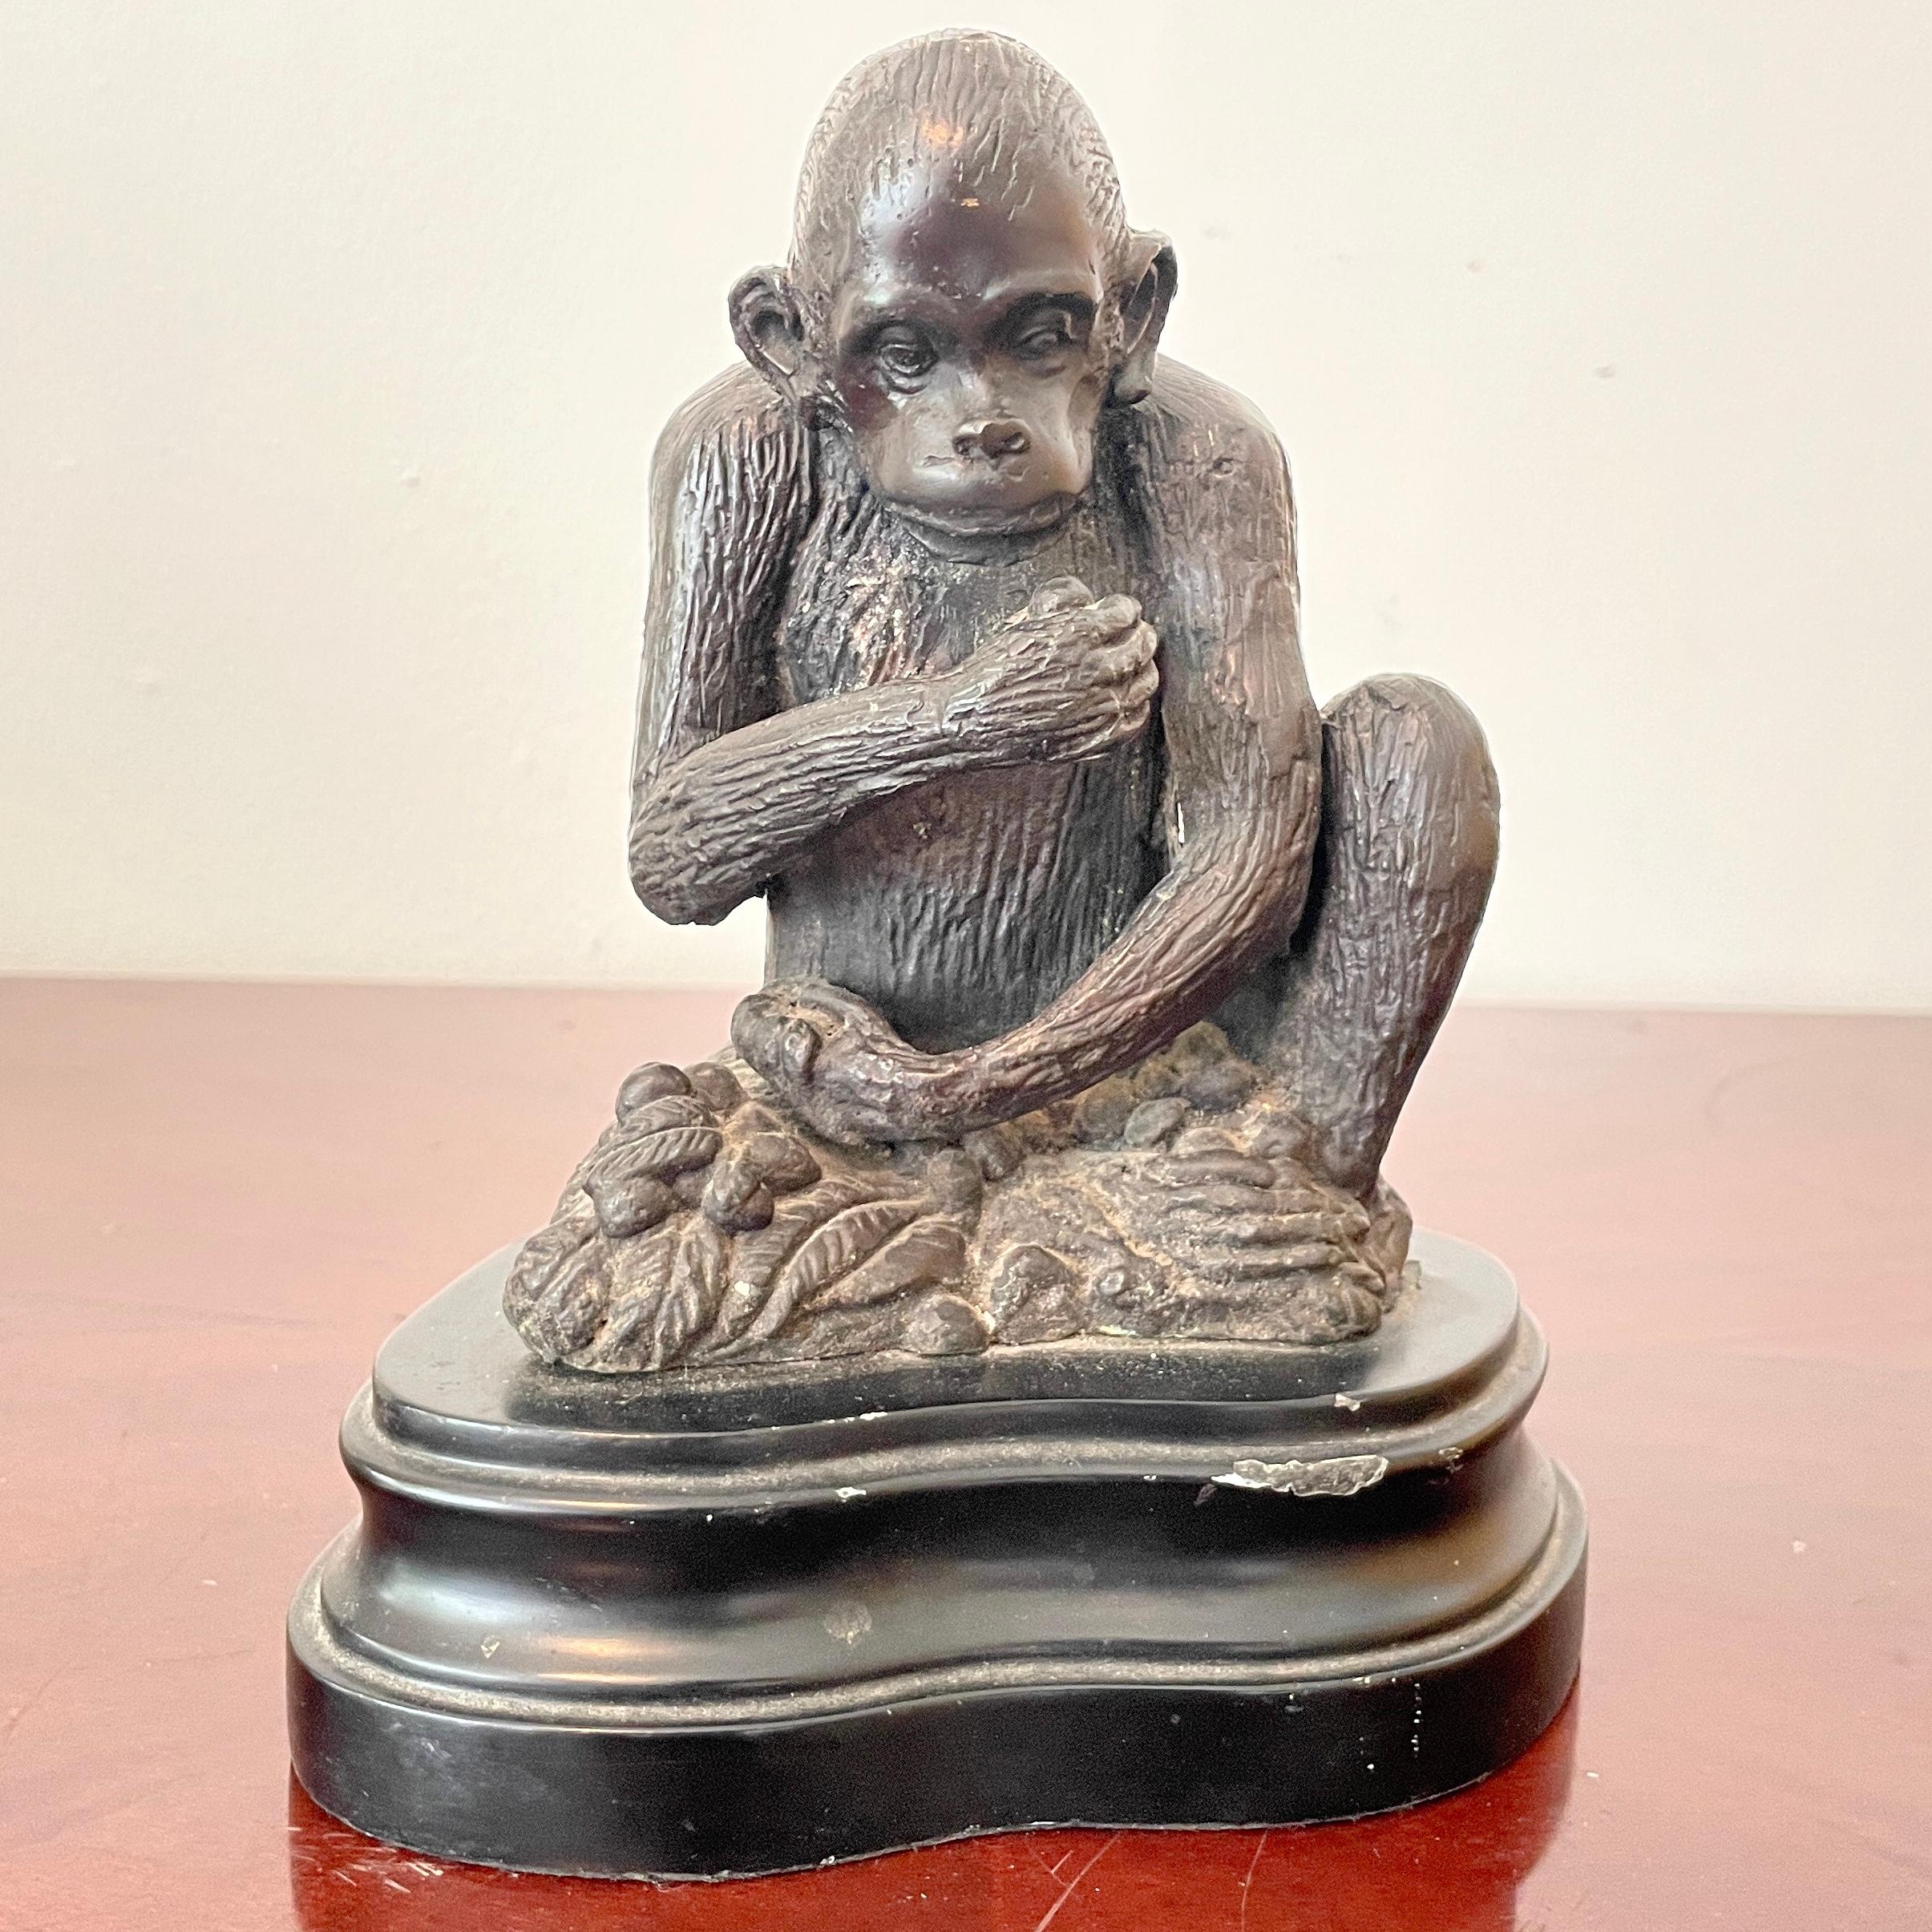 Belle statue miniature en bronze d'un singe assis sur un socle. Un excellent complément pour vos plateaux de table et vos intérieurs.